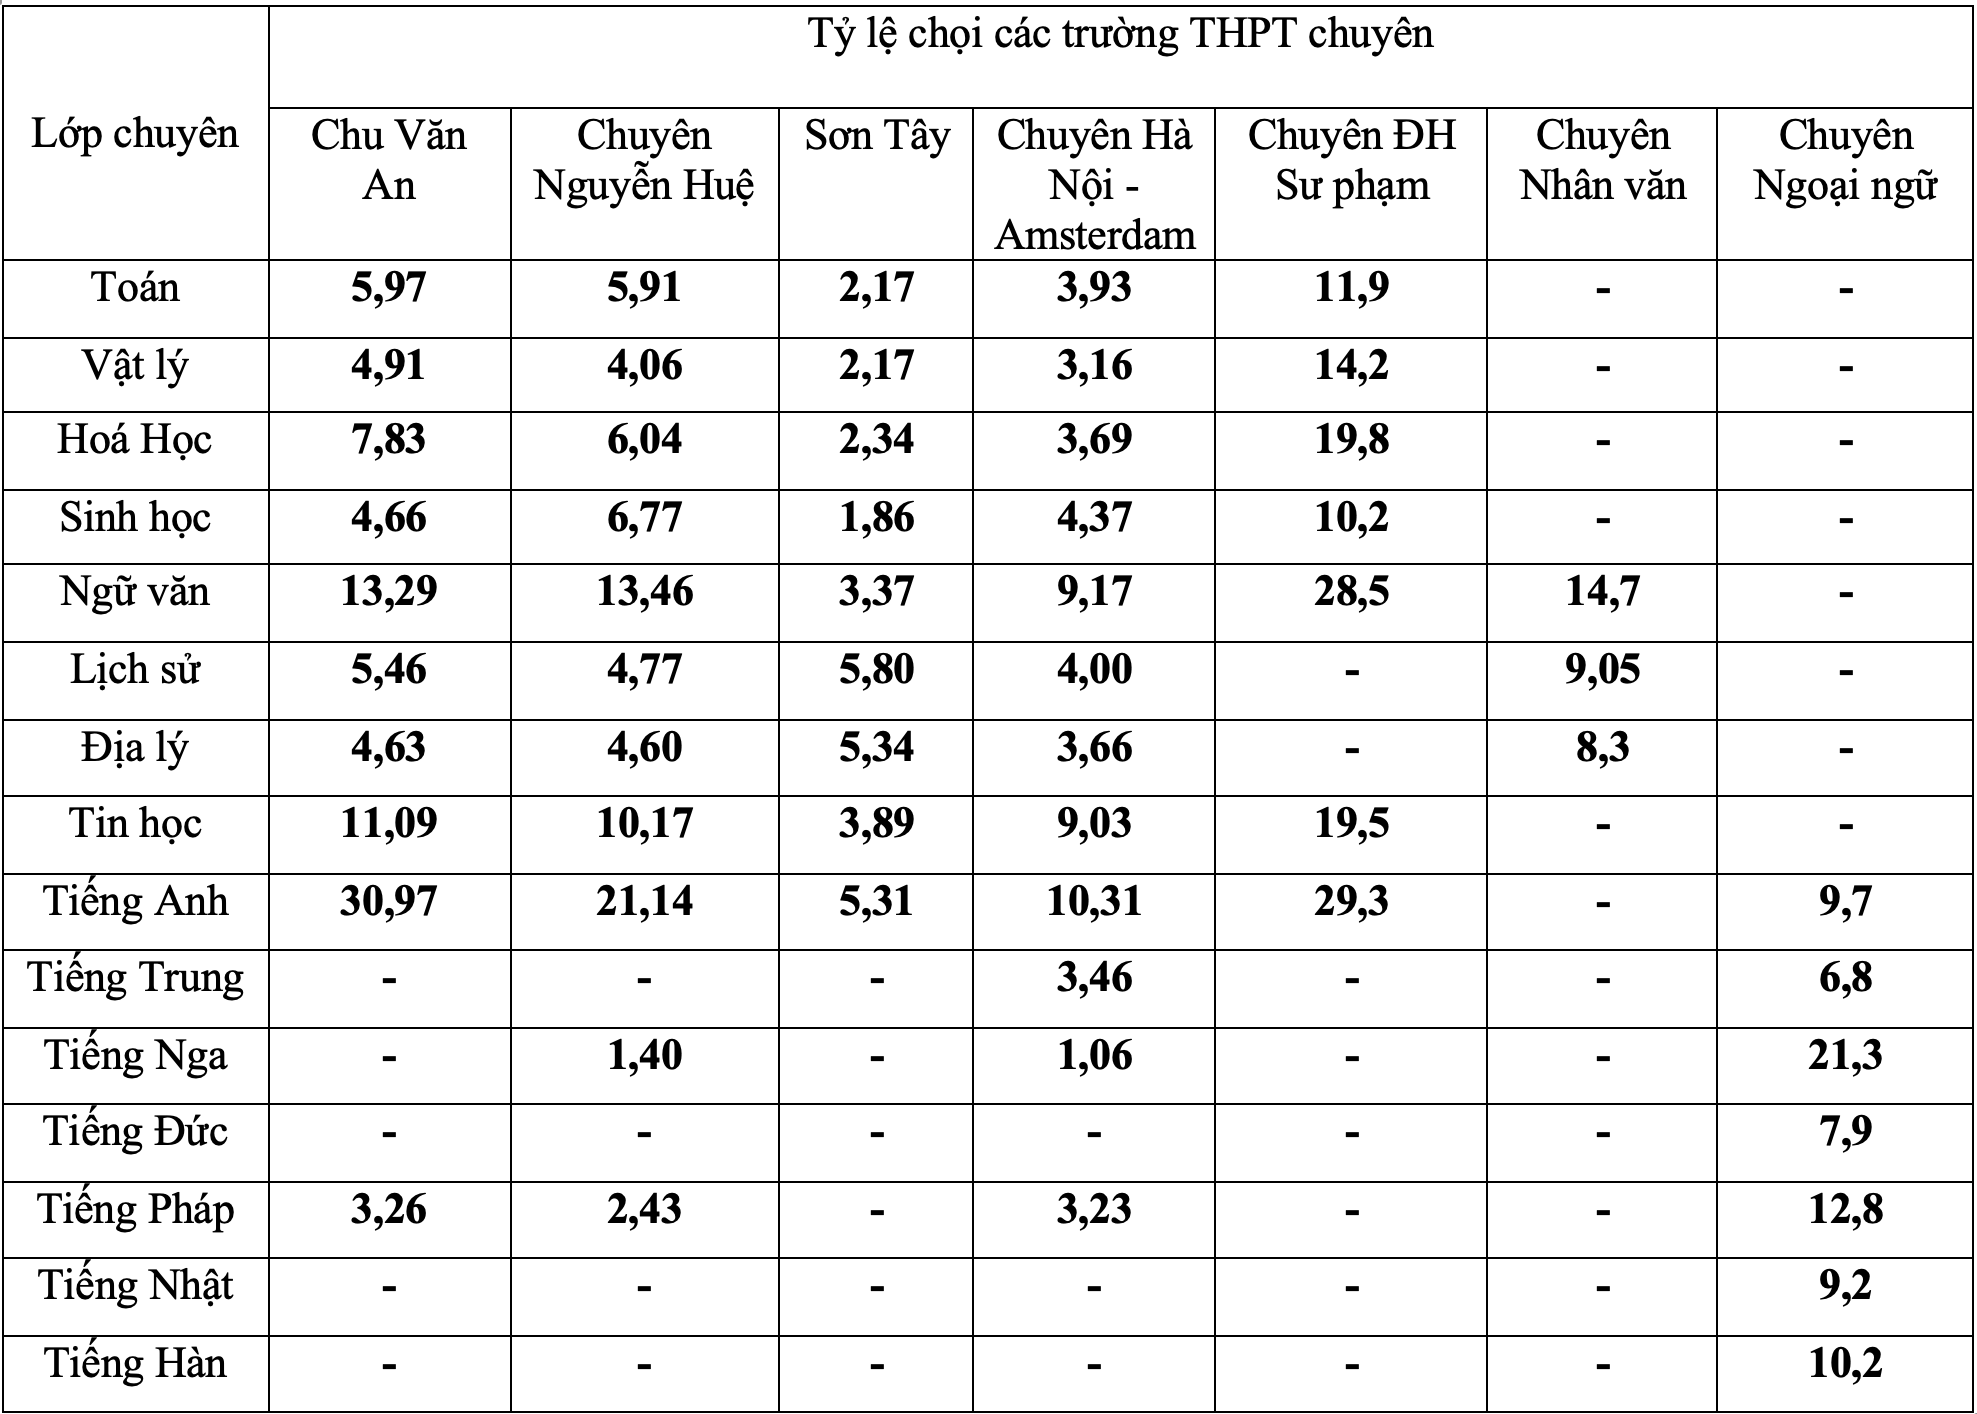 Chi tiết tỷ lệ chọi vào 7 trường THPT chuyên ở Hà Nội - 1